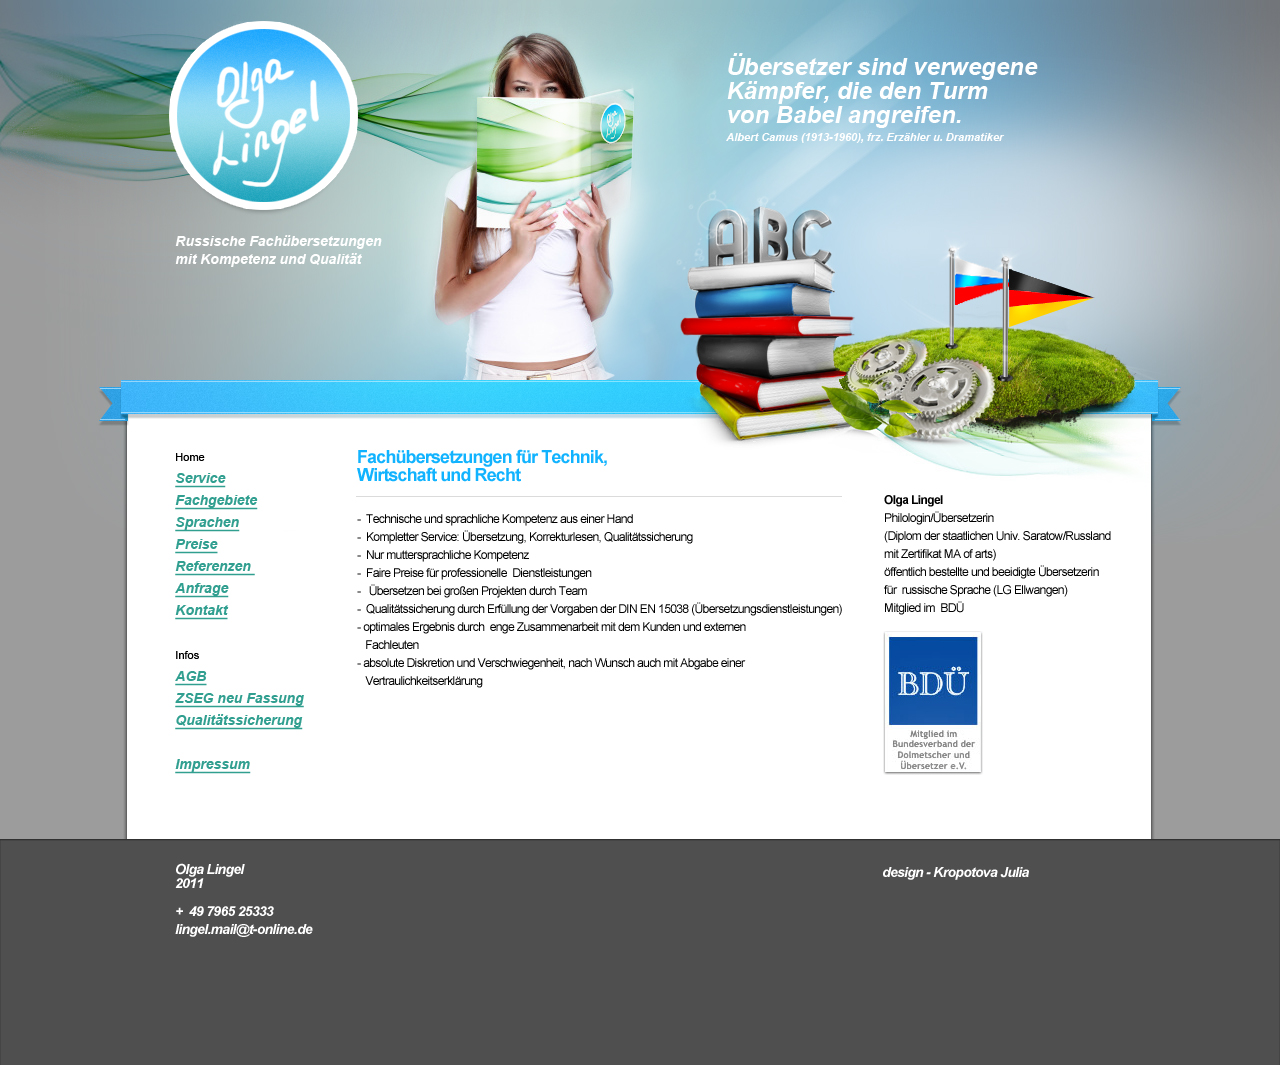 Дизайн сайта для бюро переводов (Германия)